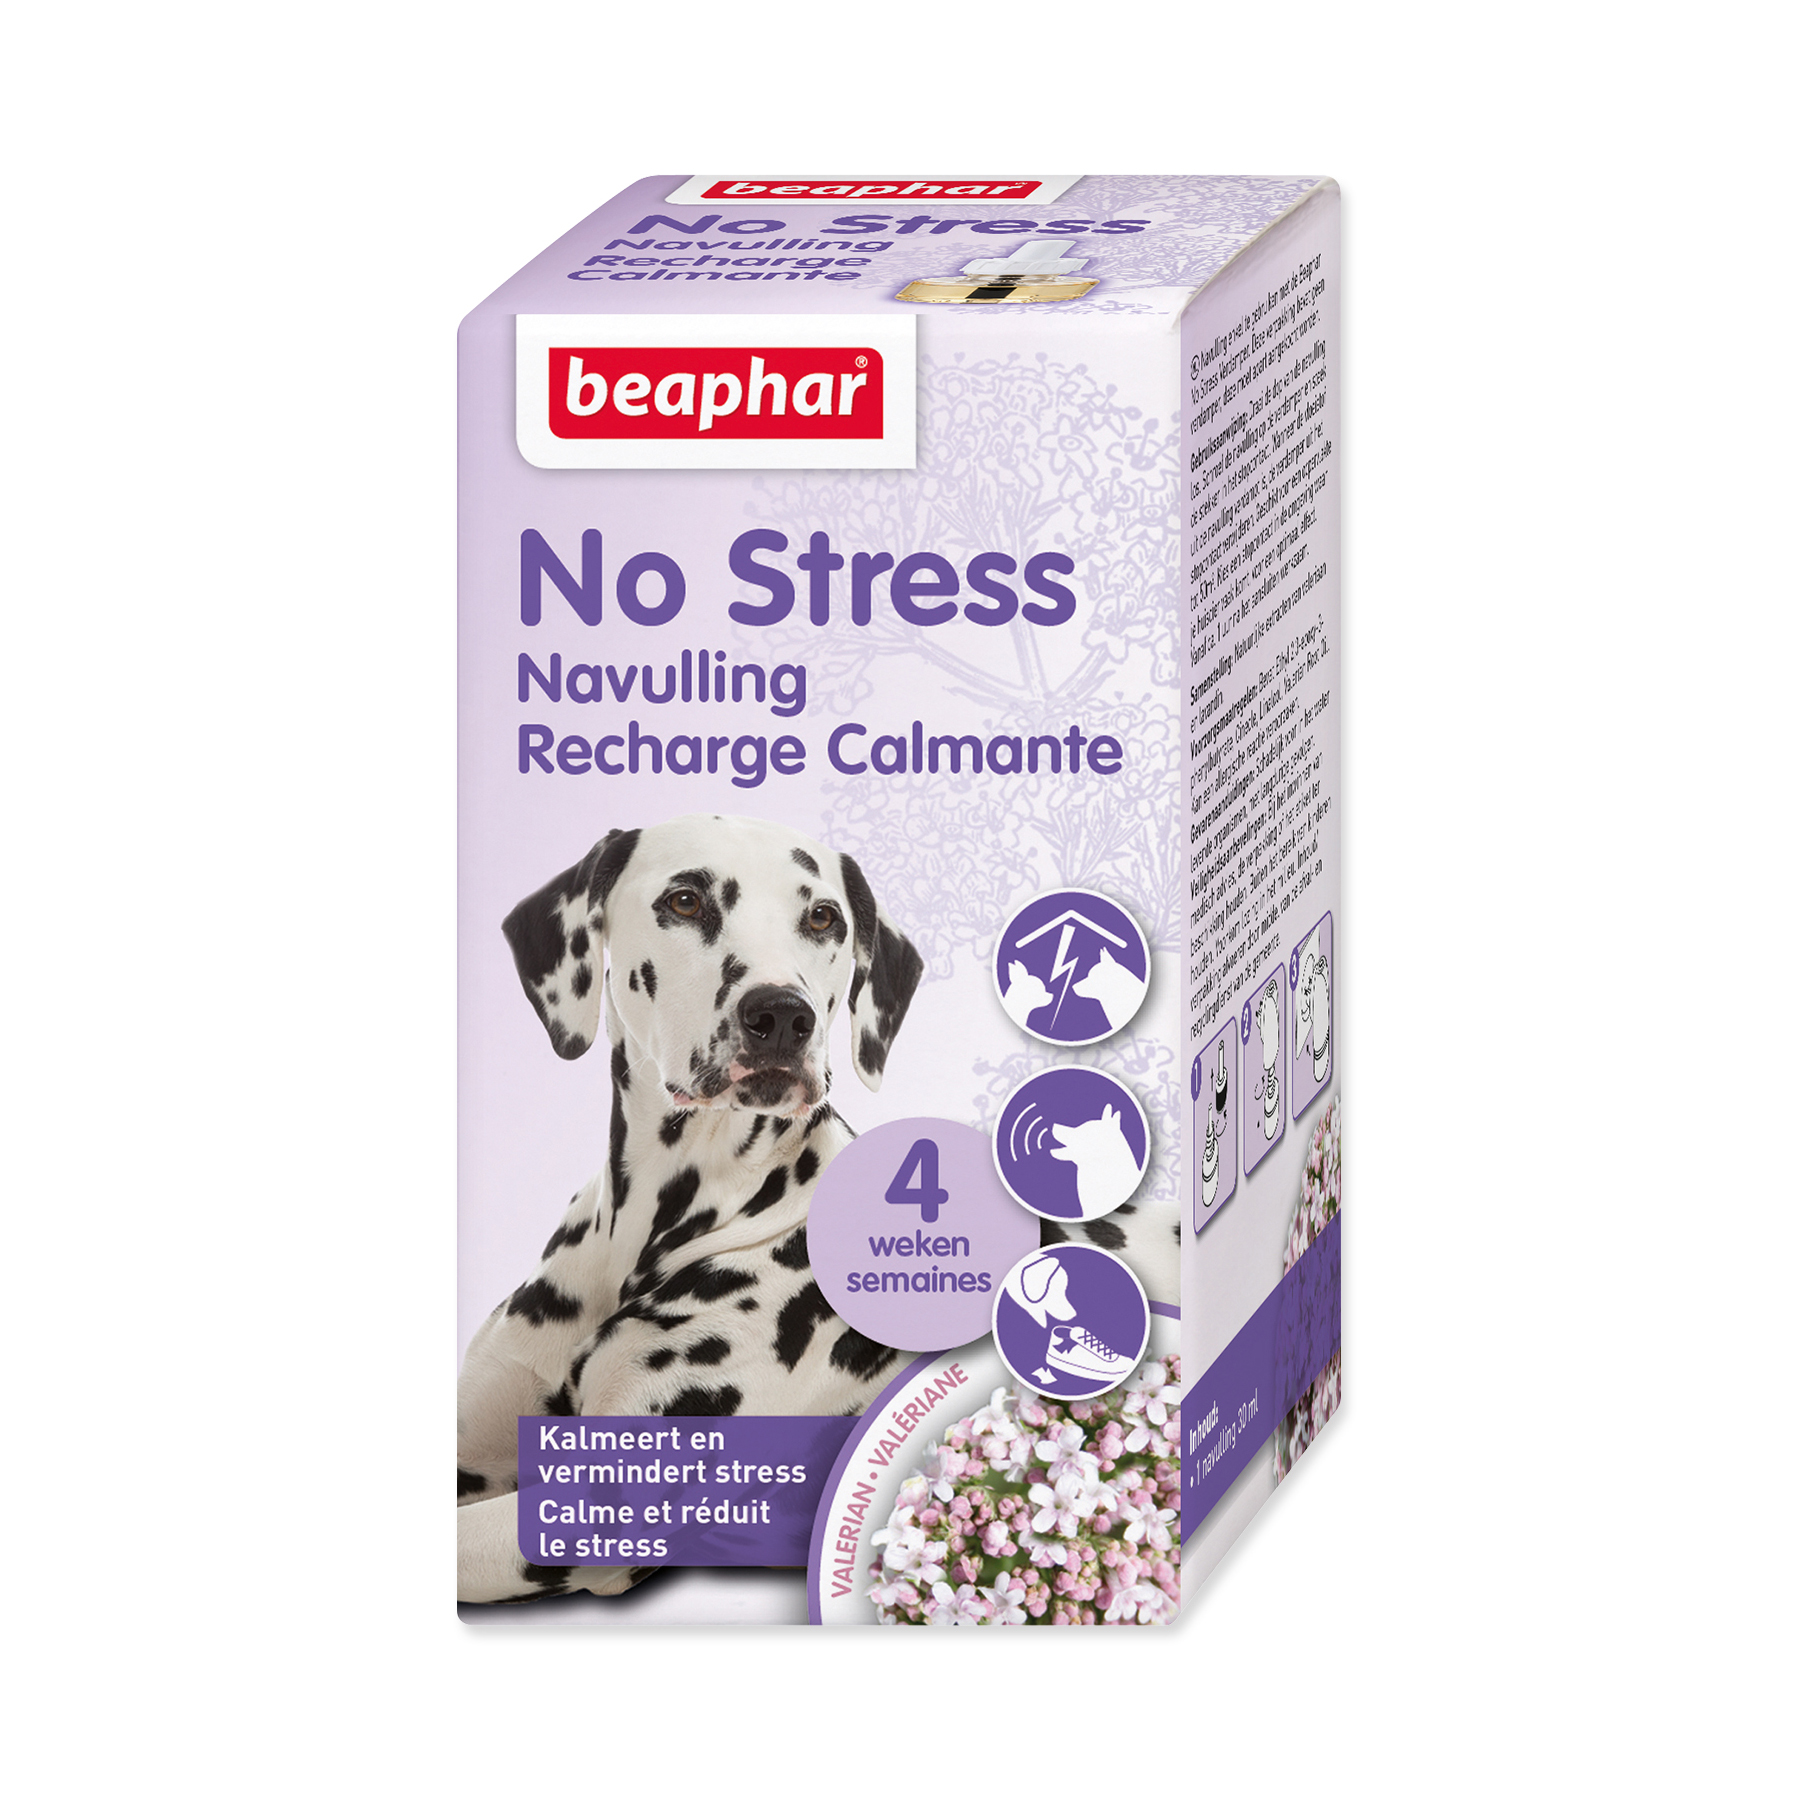 Beaphar No Stress pro psy náhradní náplň do difuzéru 30 ml Beaphar